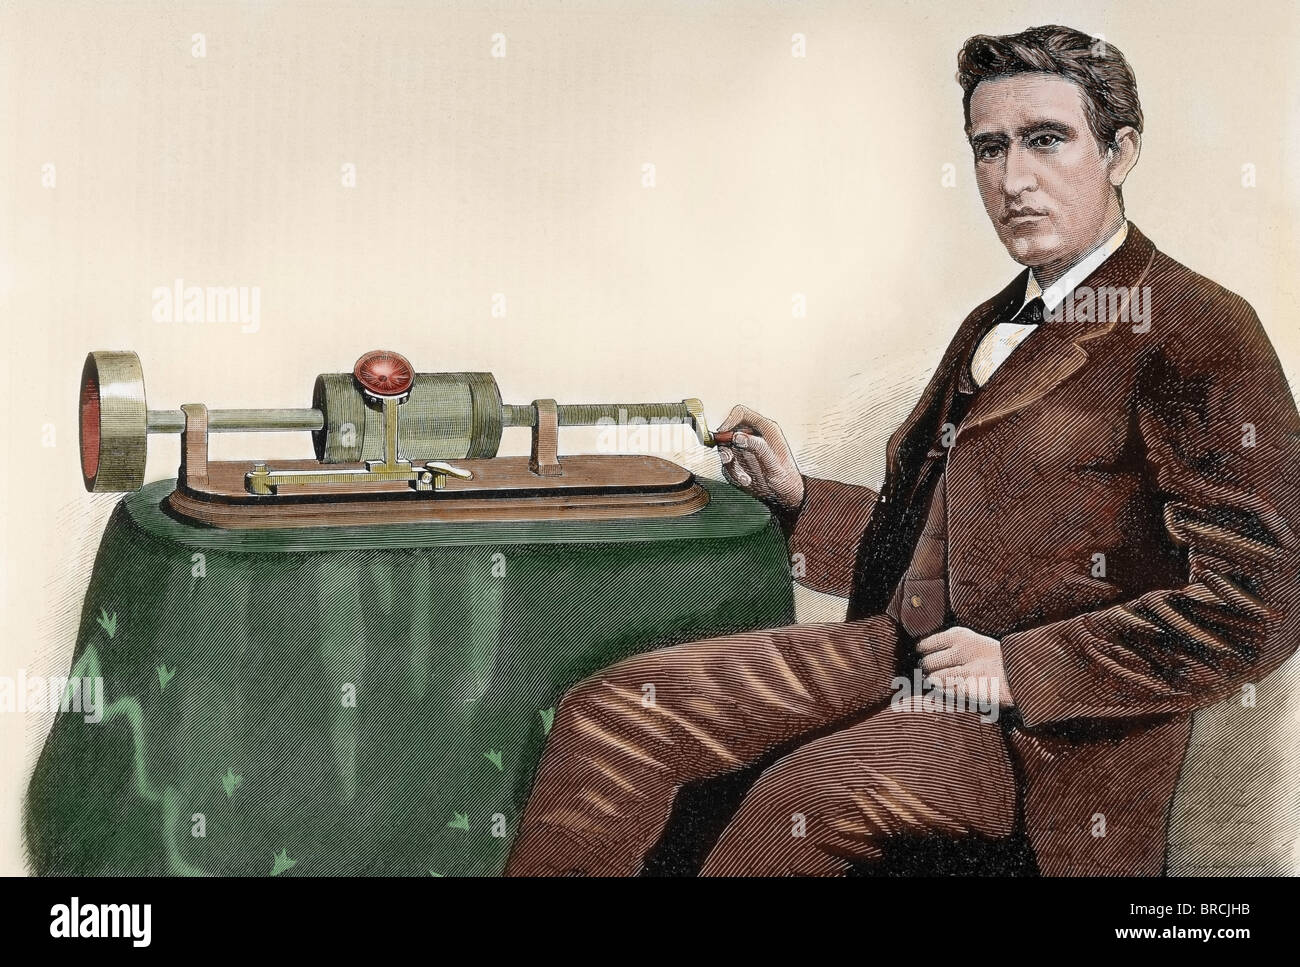 Thomas Alva Edison (1847-1931). L'inventeur américain. Gravure en couleur du 19ème siècle. Banque D'Images